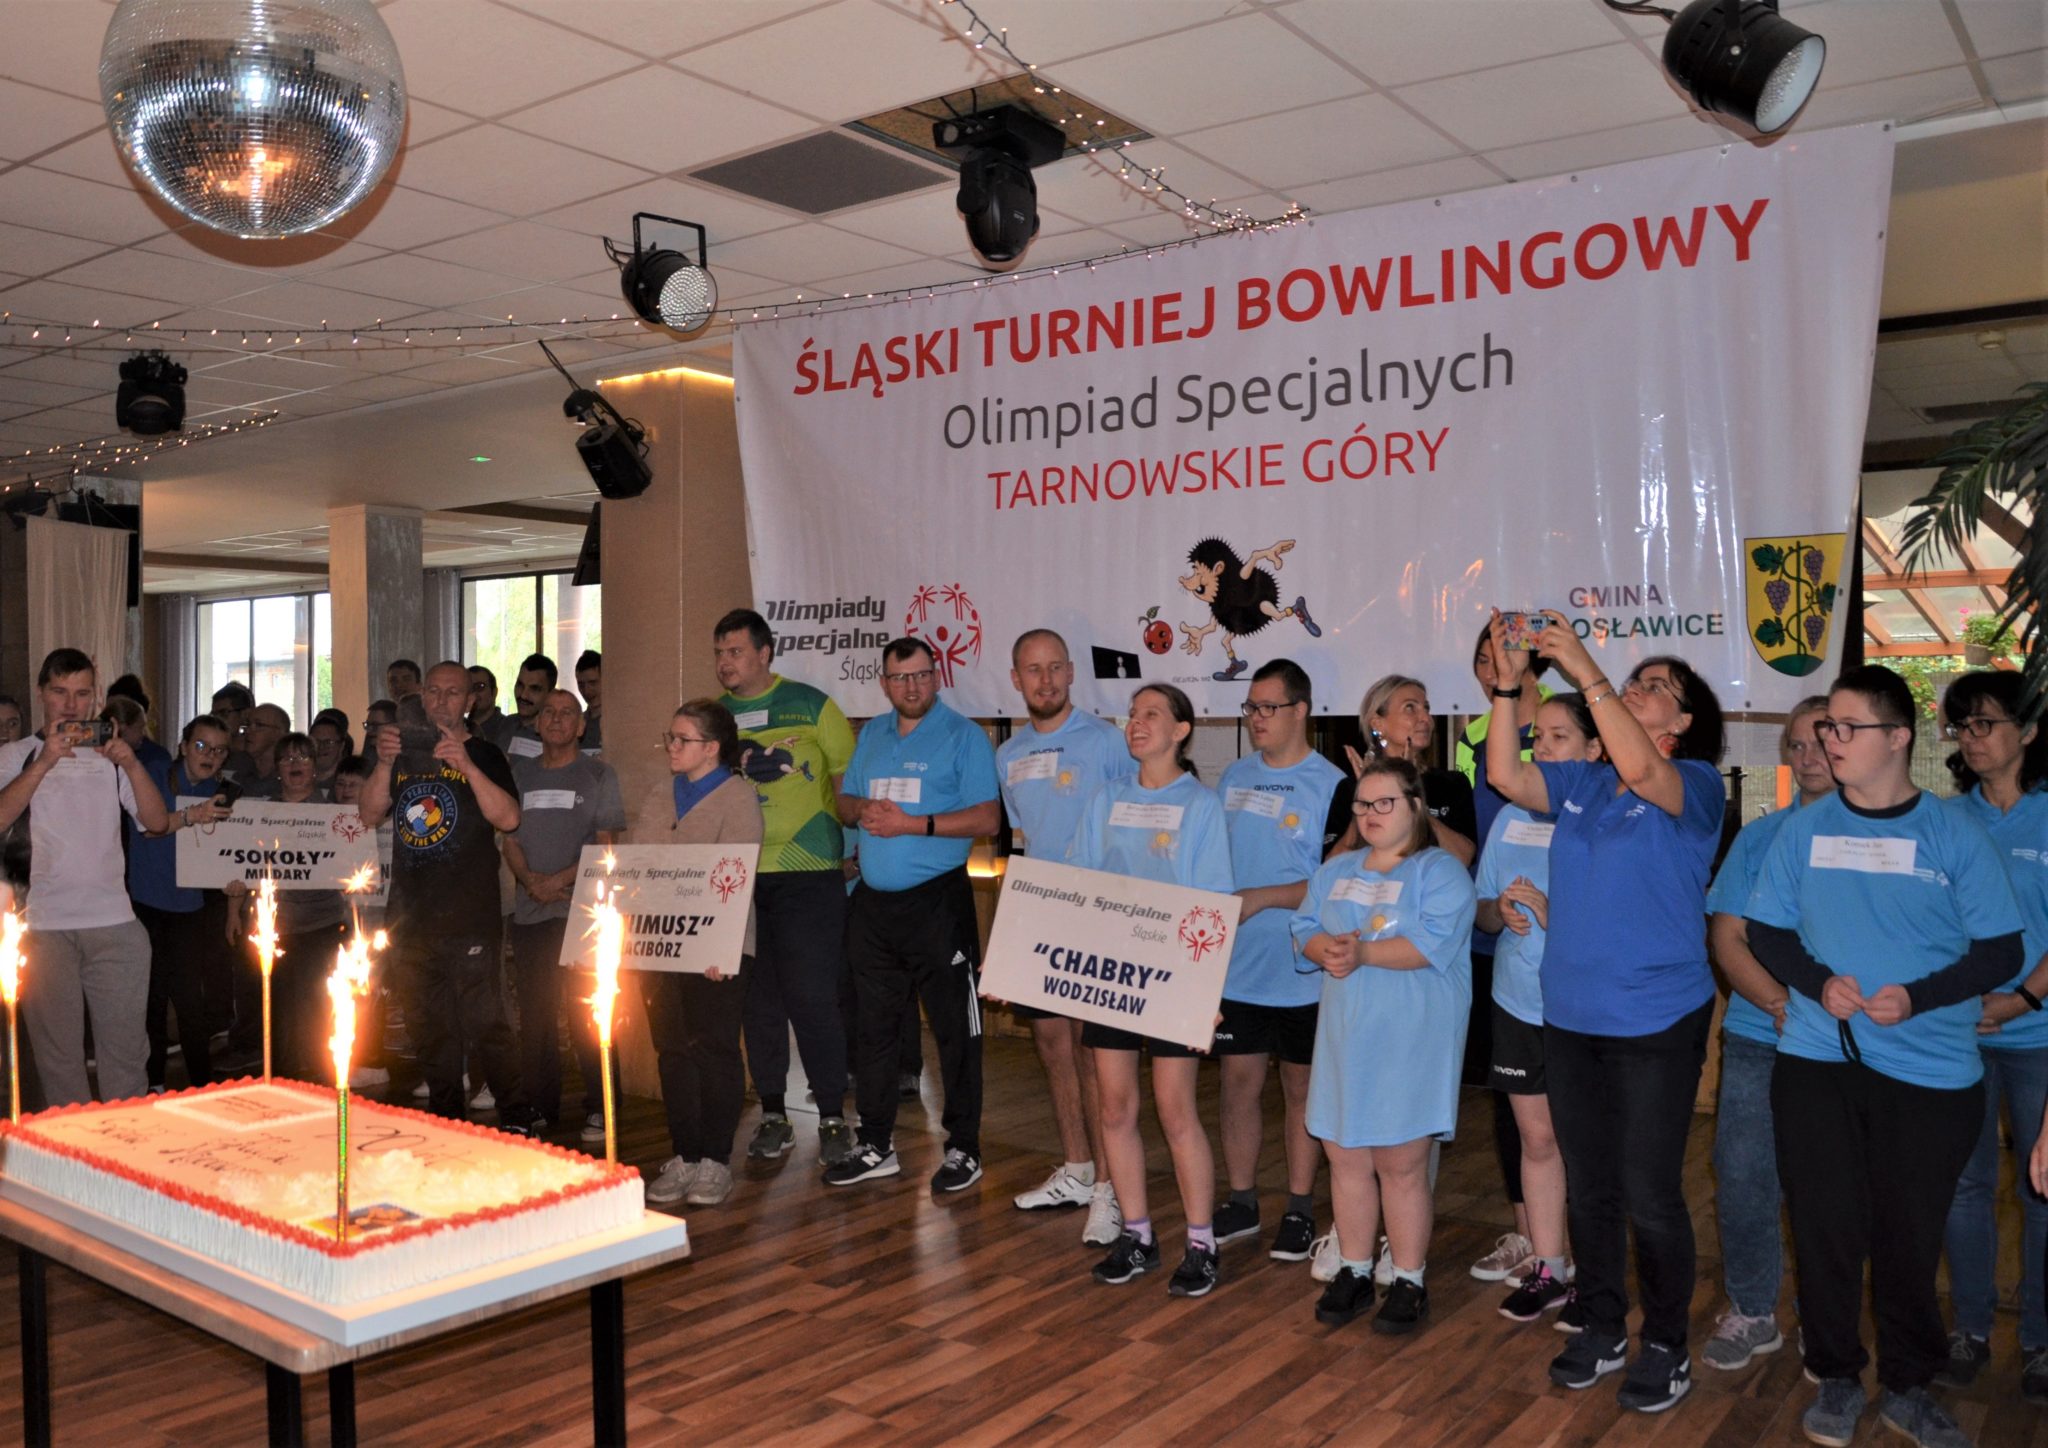 Duża grupa osób stojących obok siebie, za nimi wisi duży banek z napisem Śląski Turniej Bowlingowy Olimpiad Specjalnych Tarnowskie Góry.